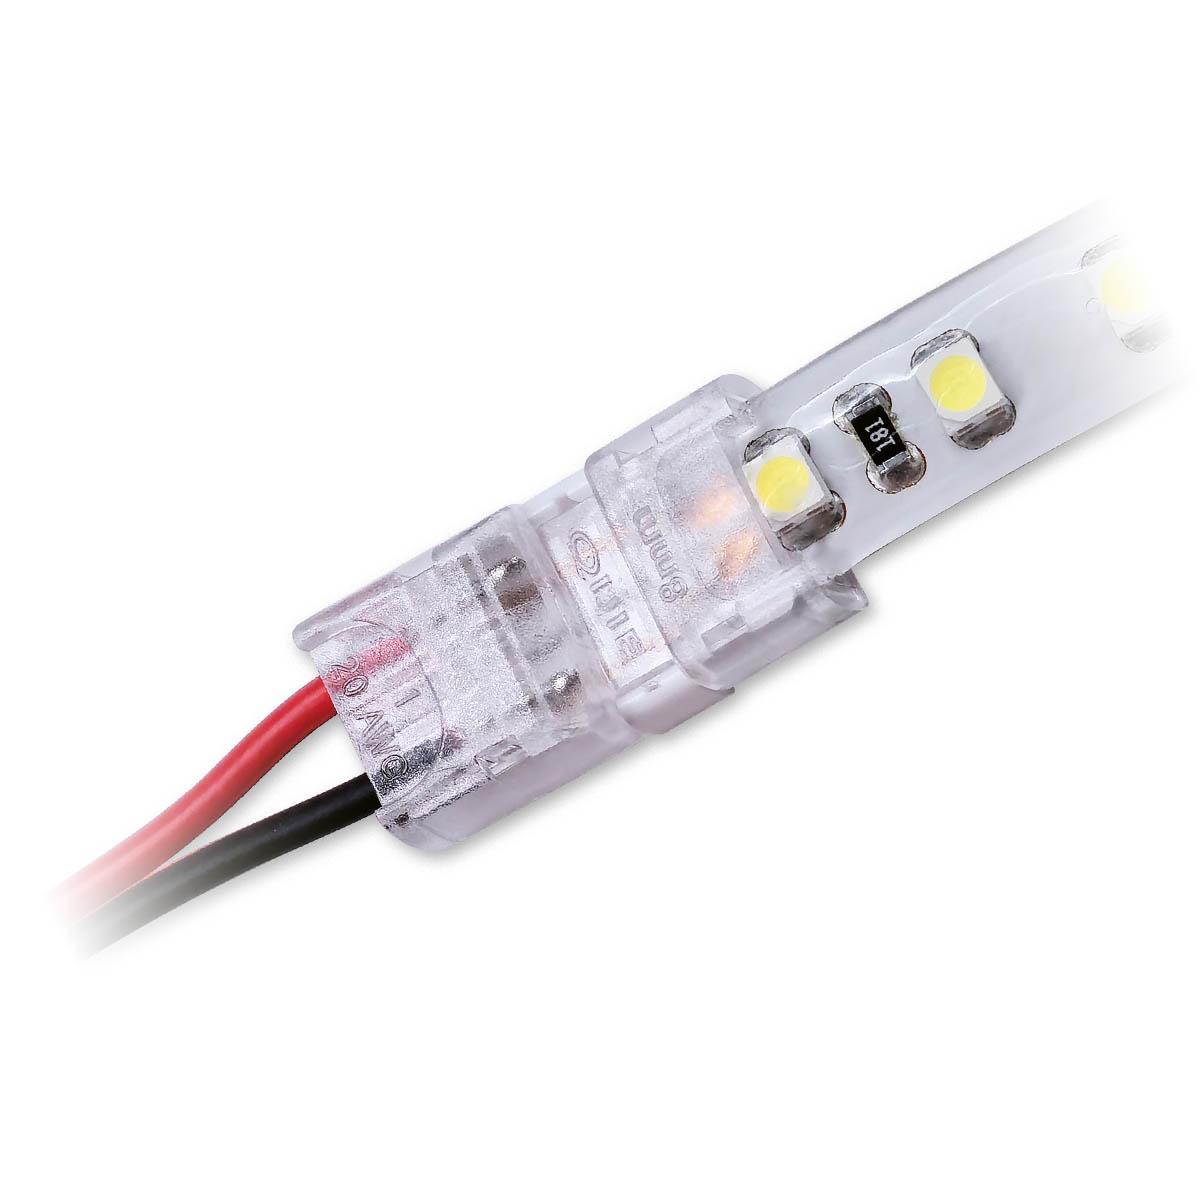 Streifenanschlusskabel 2 Pin für einfarbige LED-Streifen 8mm IP65